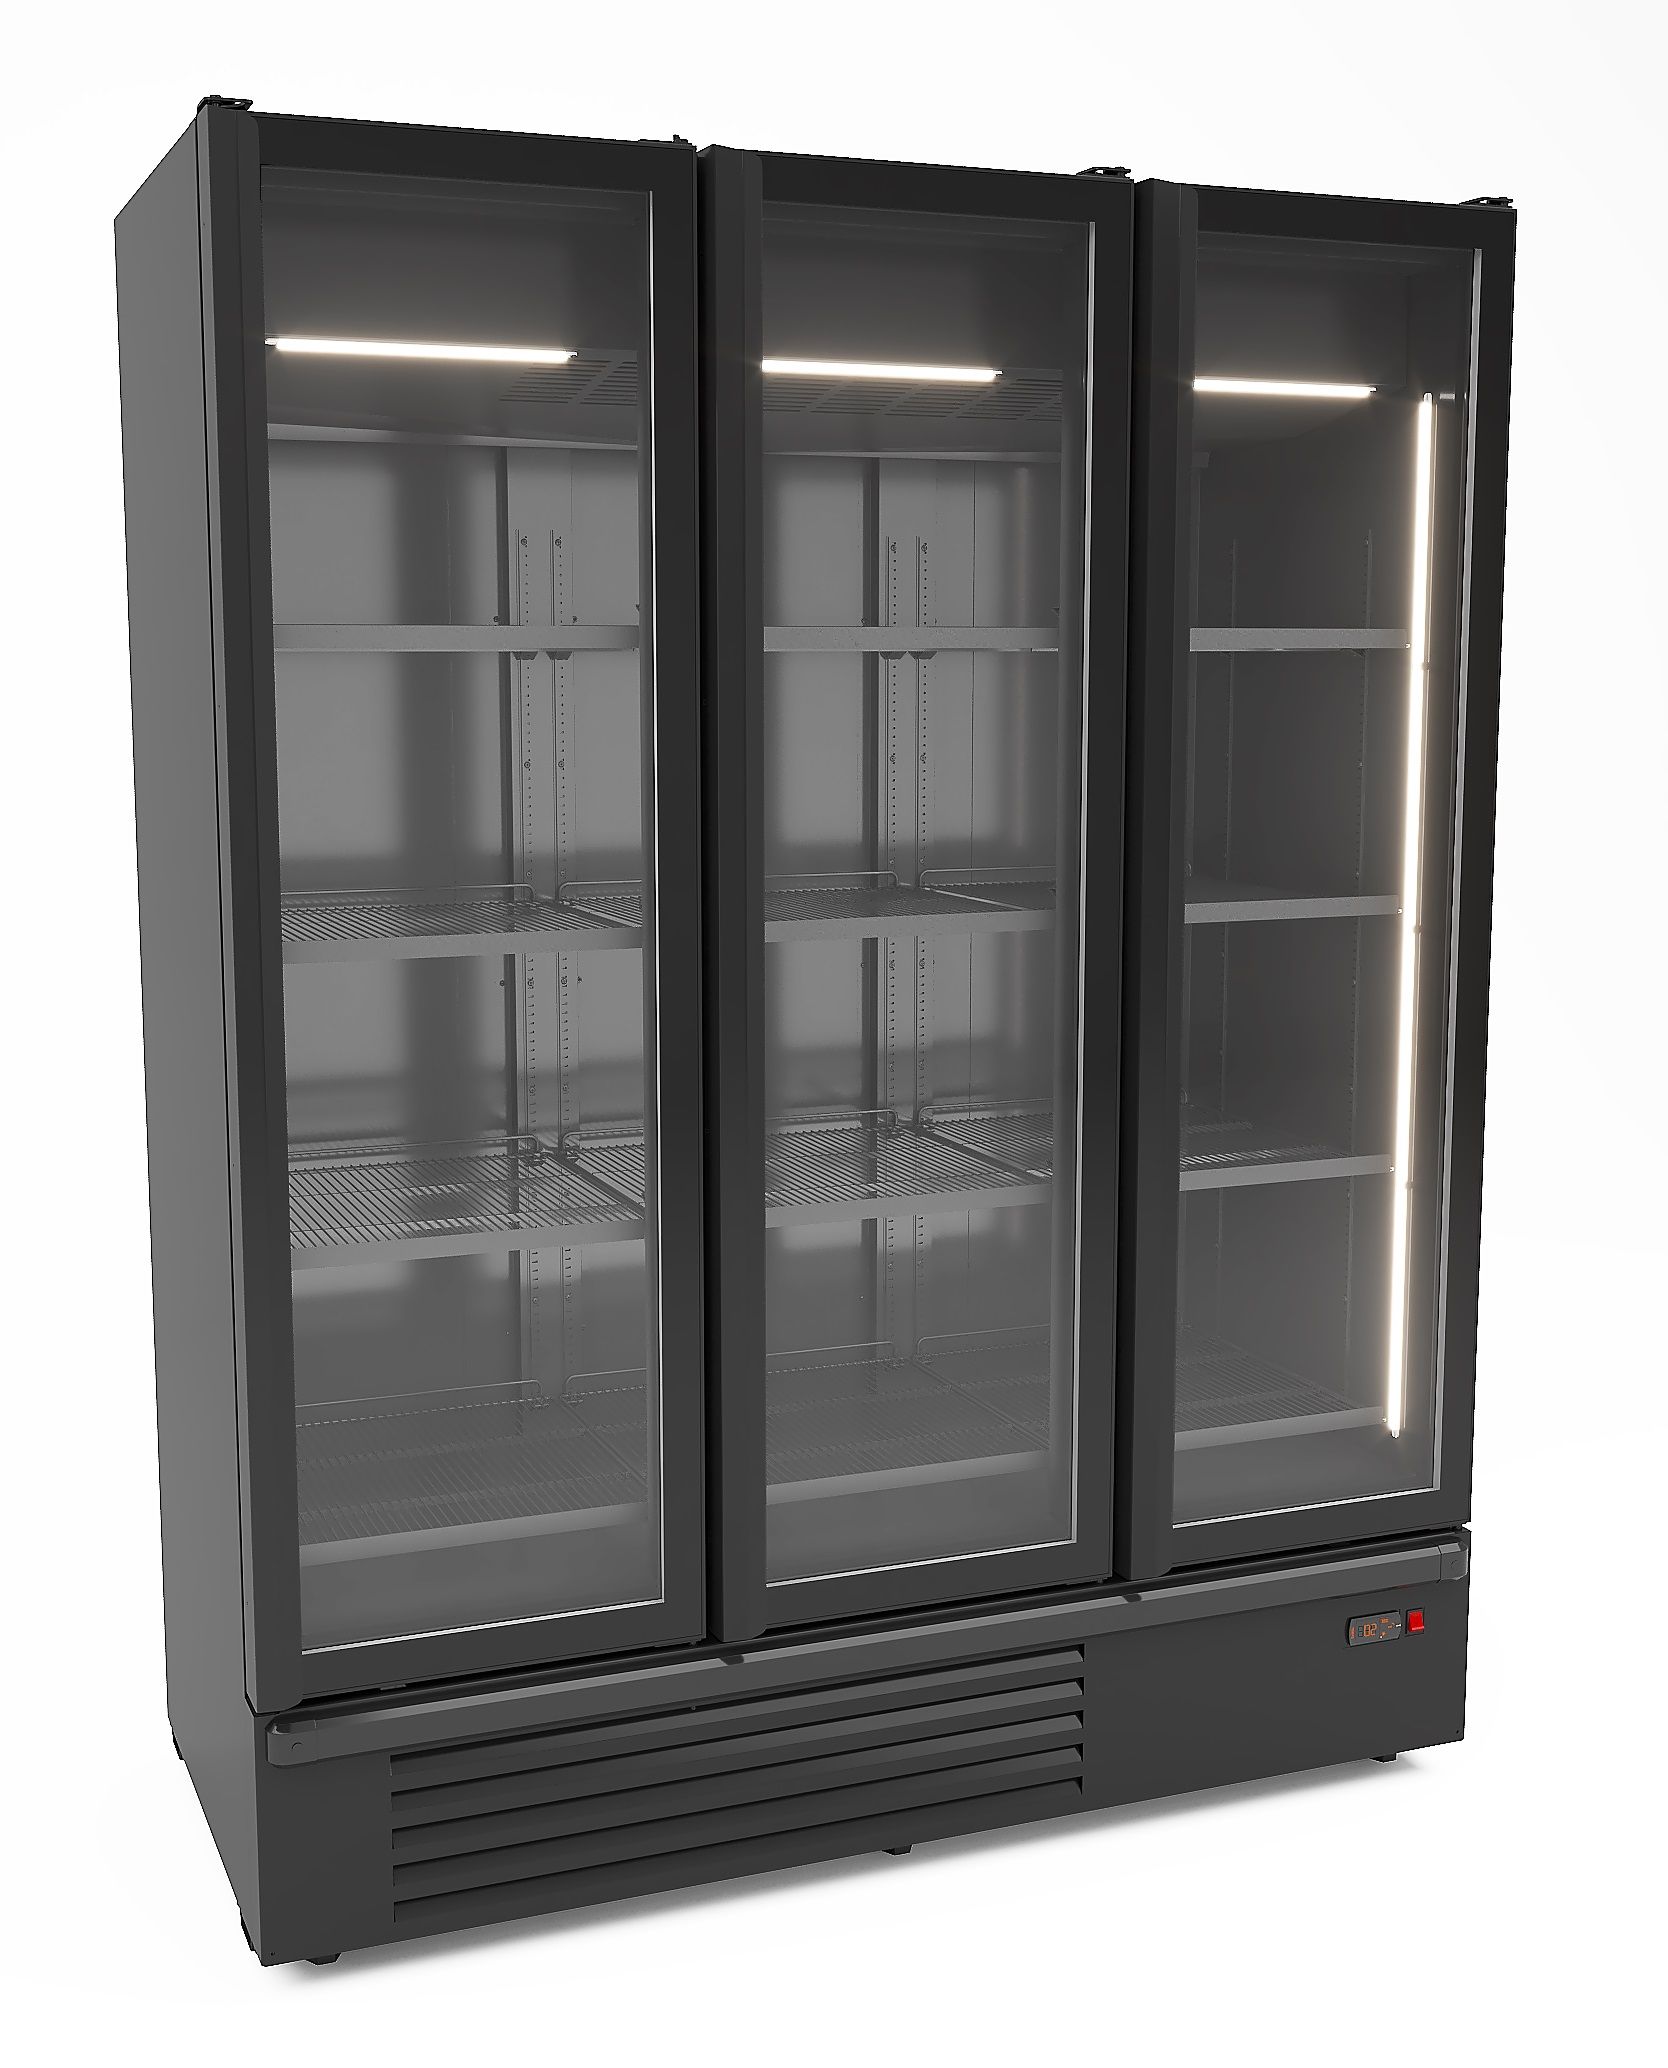 CombiSteel Refrigerator 3 Glass Door Black 1555L